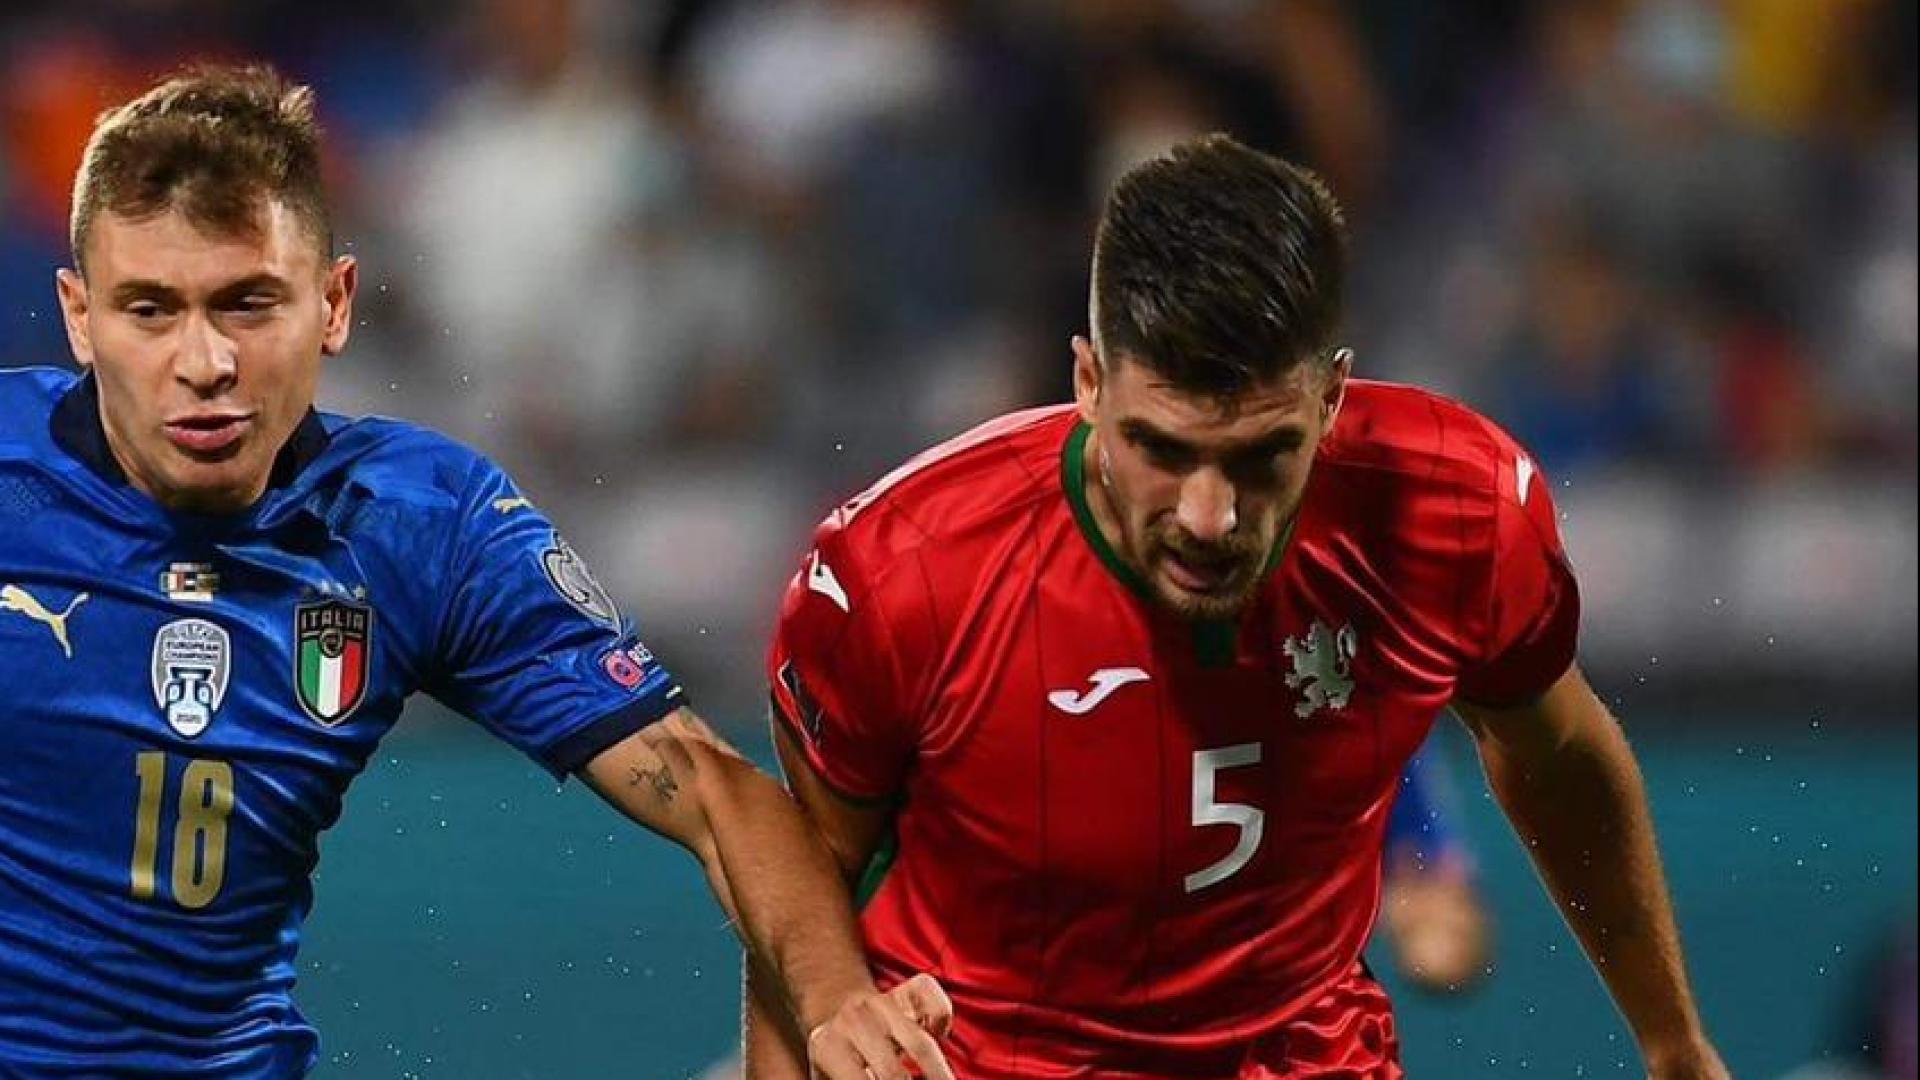 Nazionali: Hristov pareggia contro l'Italia, assist per Podgoreanu